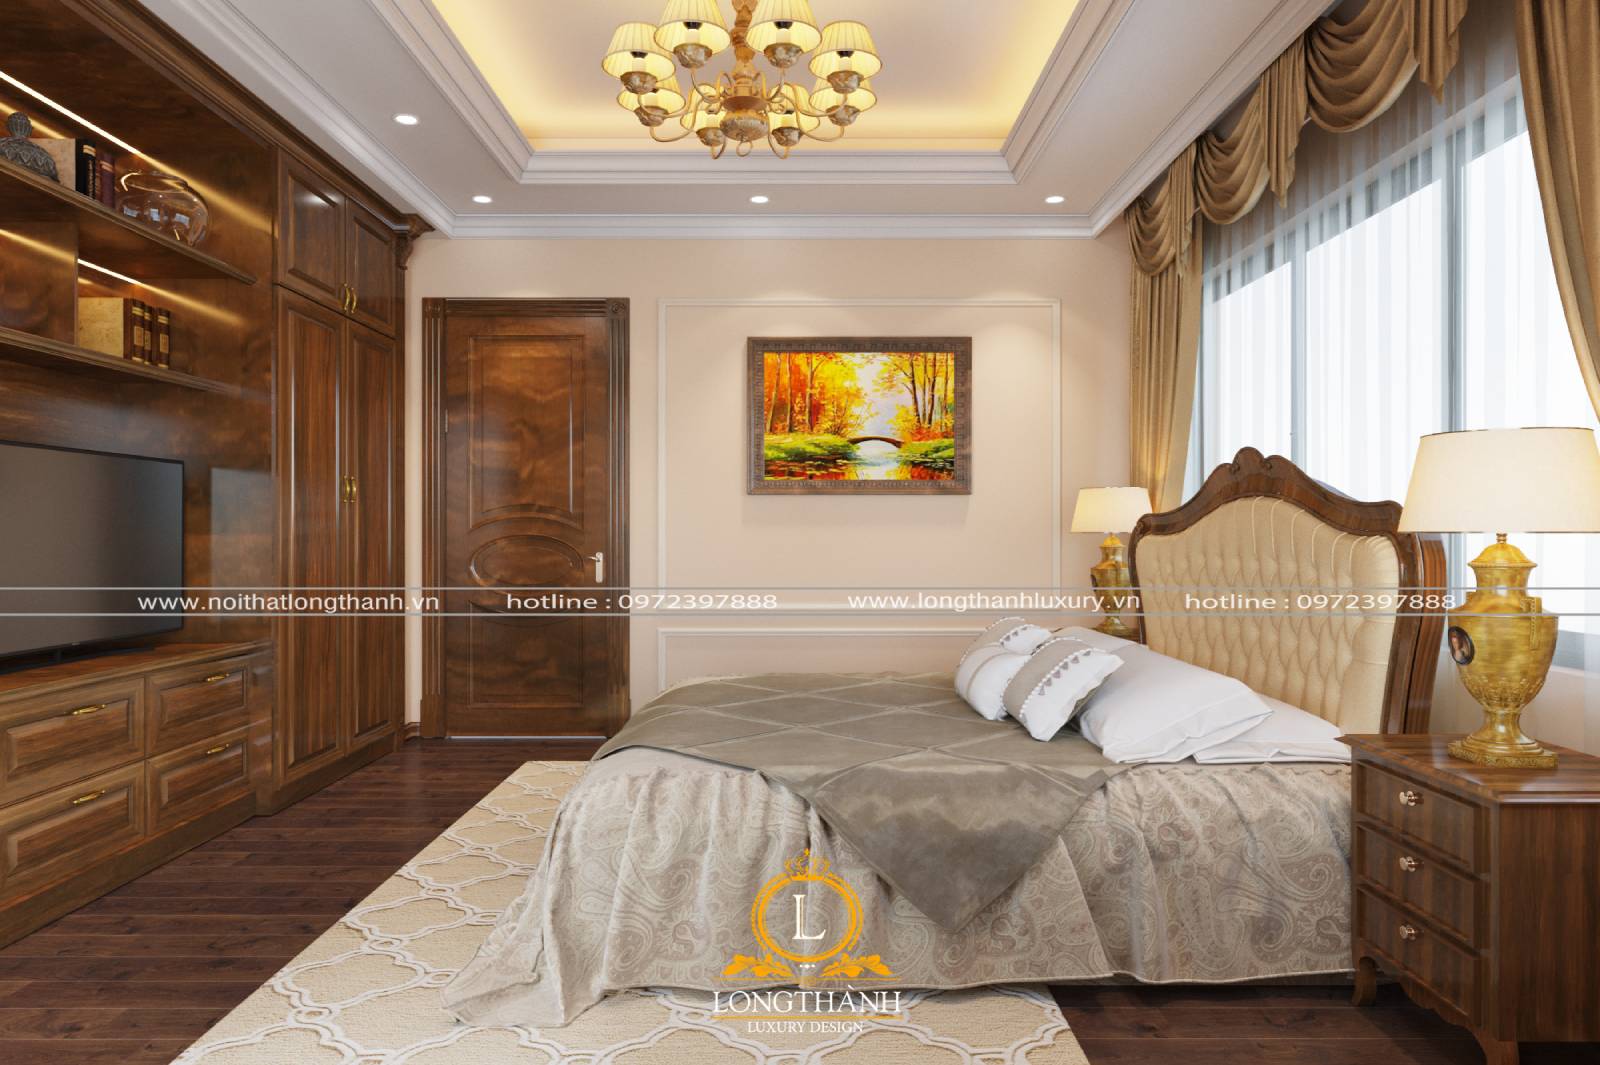 Tranh treo tường phòng ngủ tân cổ điển với gam màu nóng tạo cảm giác ấm cúng